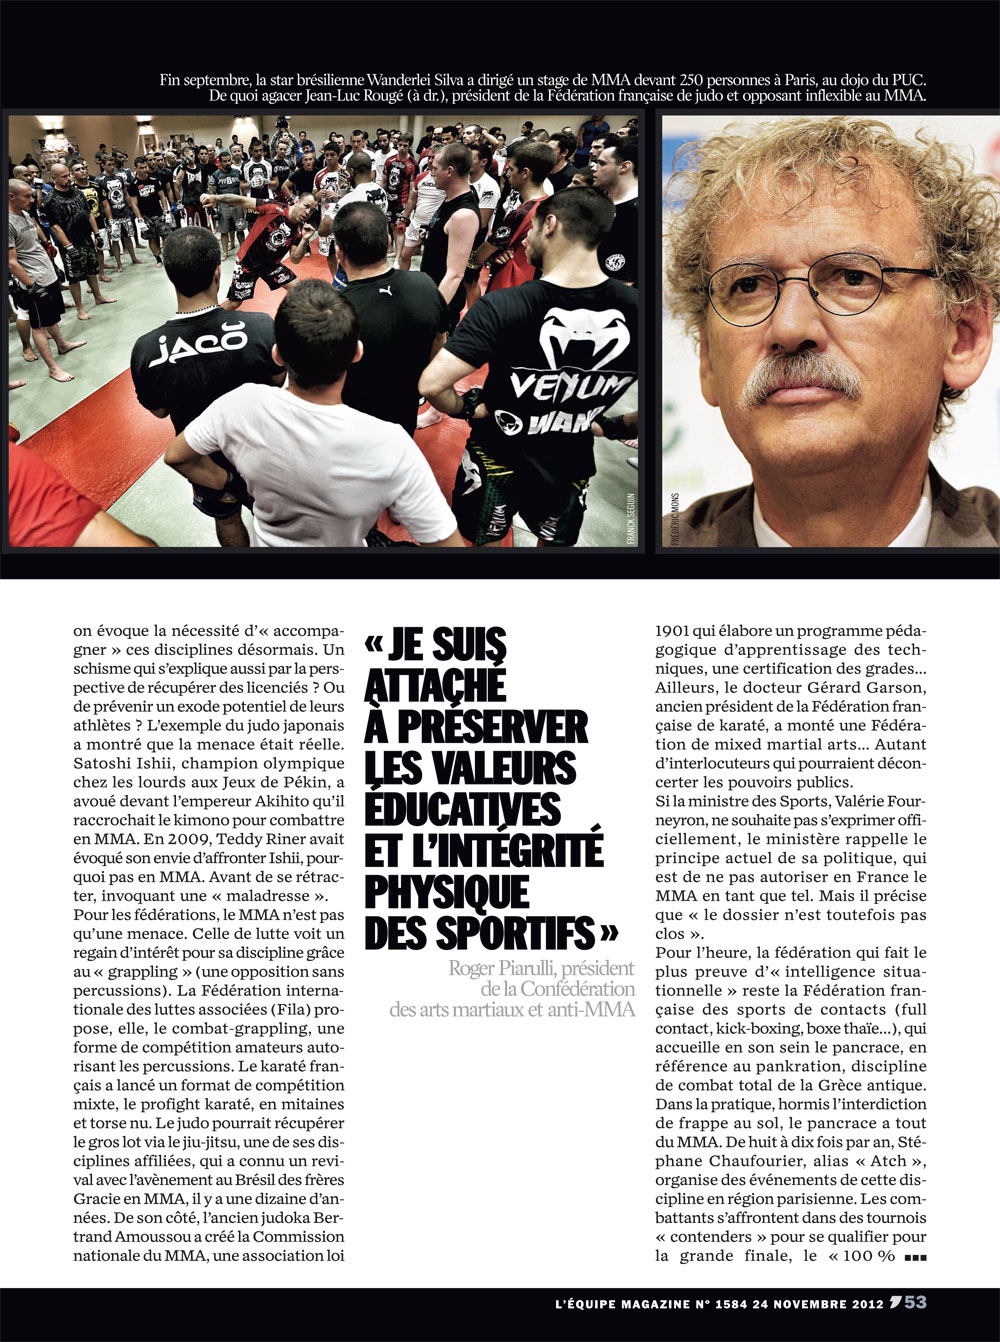 L'équipe magazine, 1584, Novembre 2012, Réserve française, MMA, pancrace